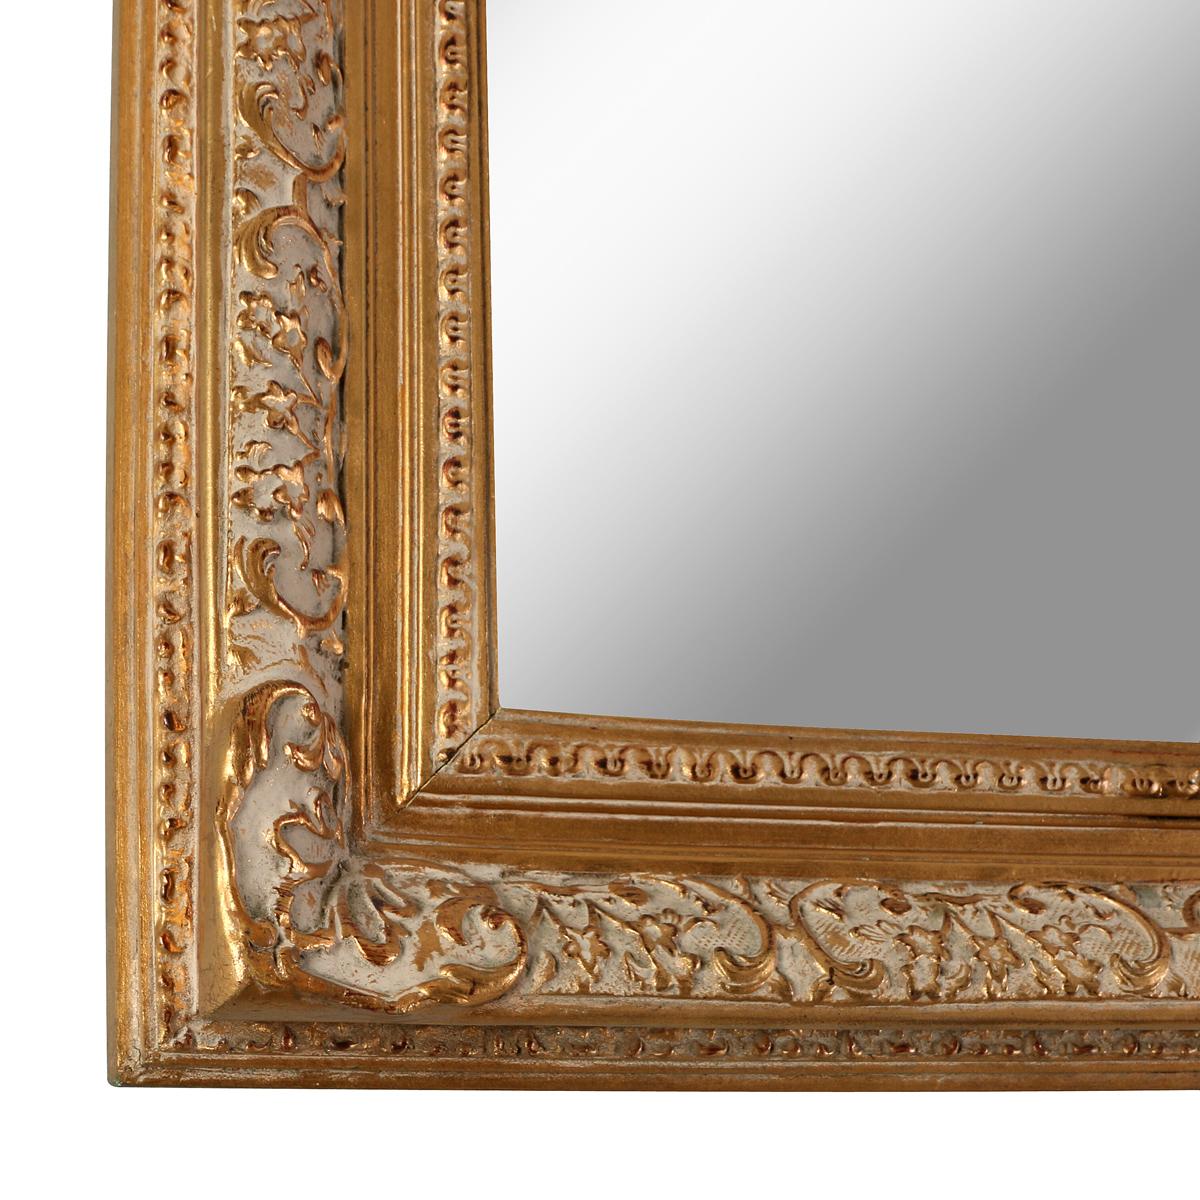 Ein vergoldetes Holz Spiegel mit schönen geschnitzten Dekorationen zwischen und inneren und äußeren Wulst Form.  Der innere geschnitzte Rahmen ist nur teilweise vergoldet, so dass die untere Grundfarbe sichtbar wird, die vor dem Blättern aufgetragen